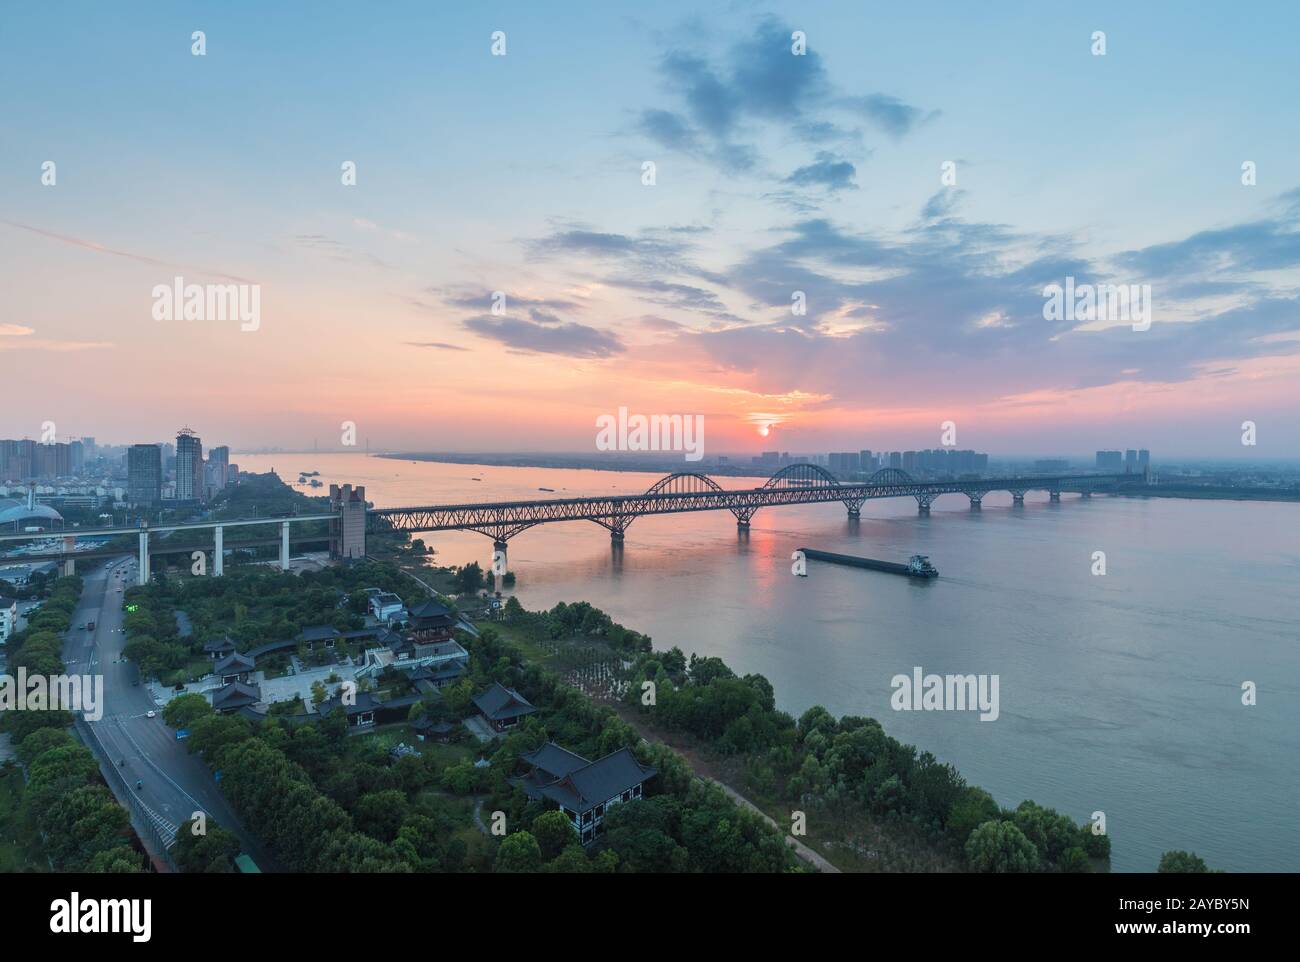 jiujiang yangtze river bridge at dusk Stock Photo